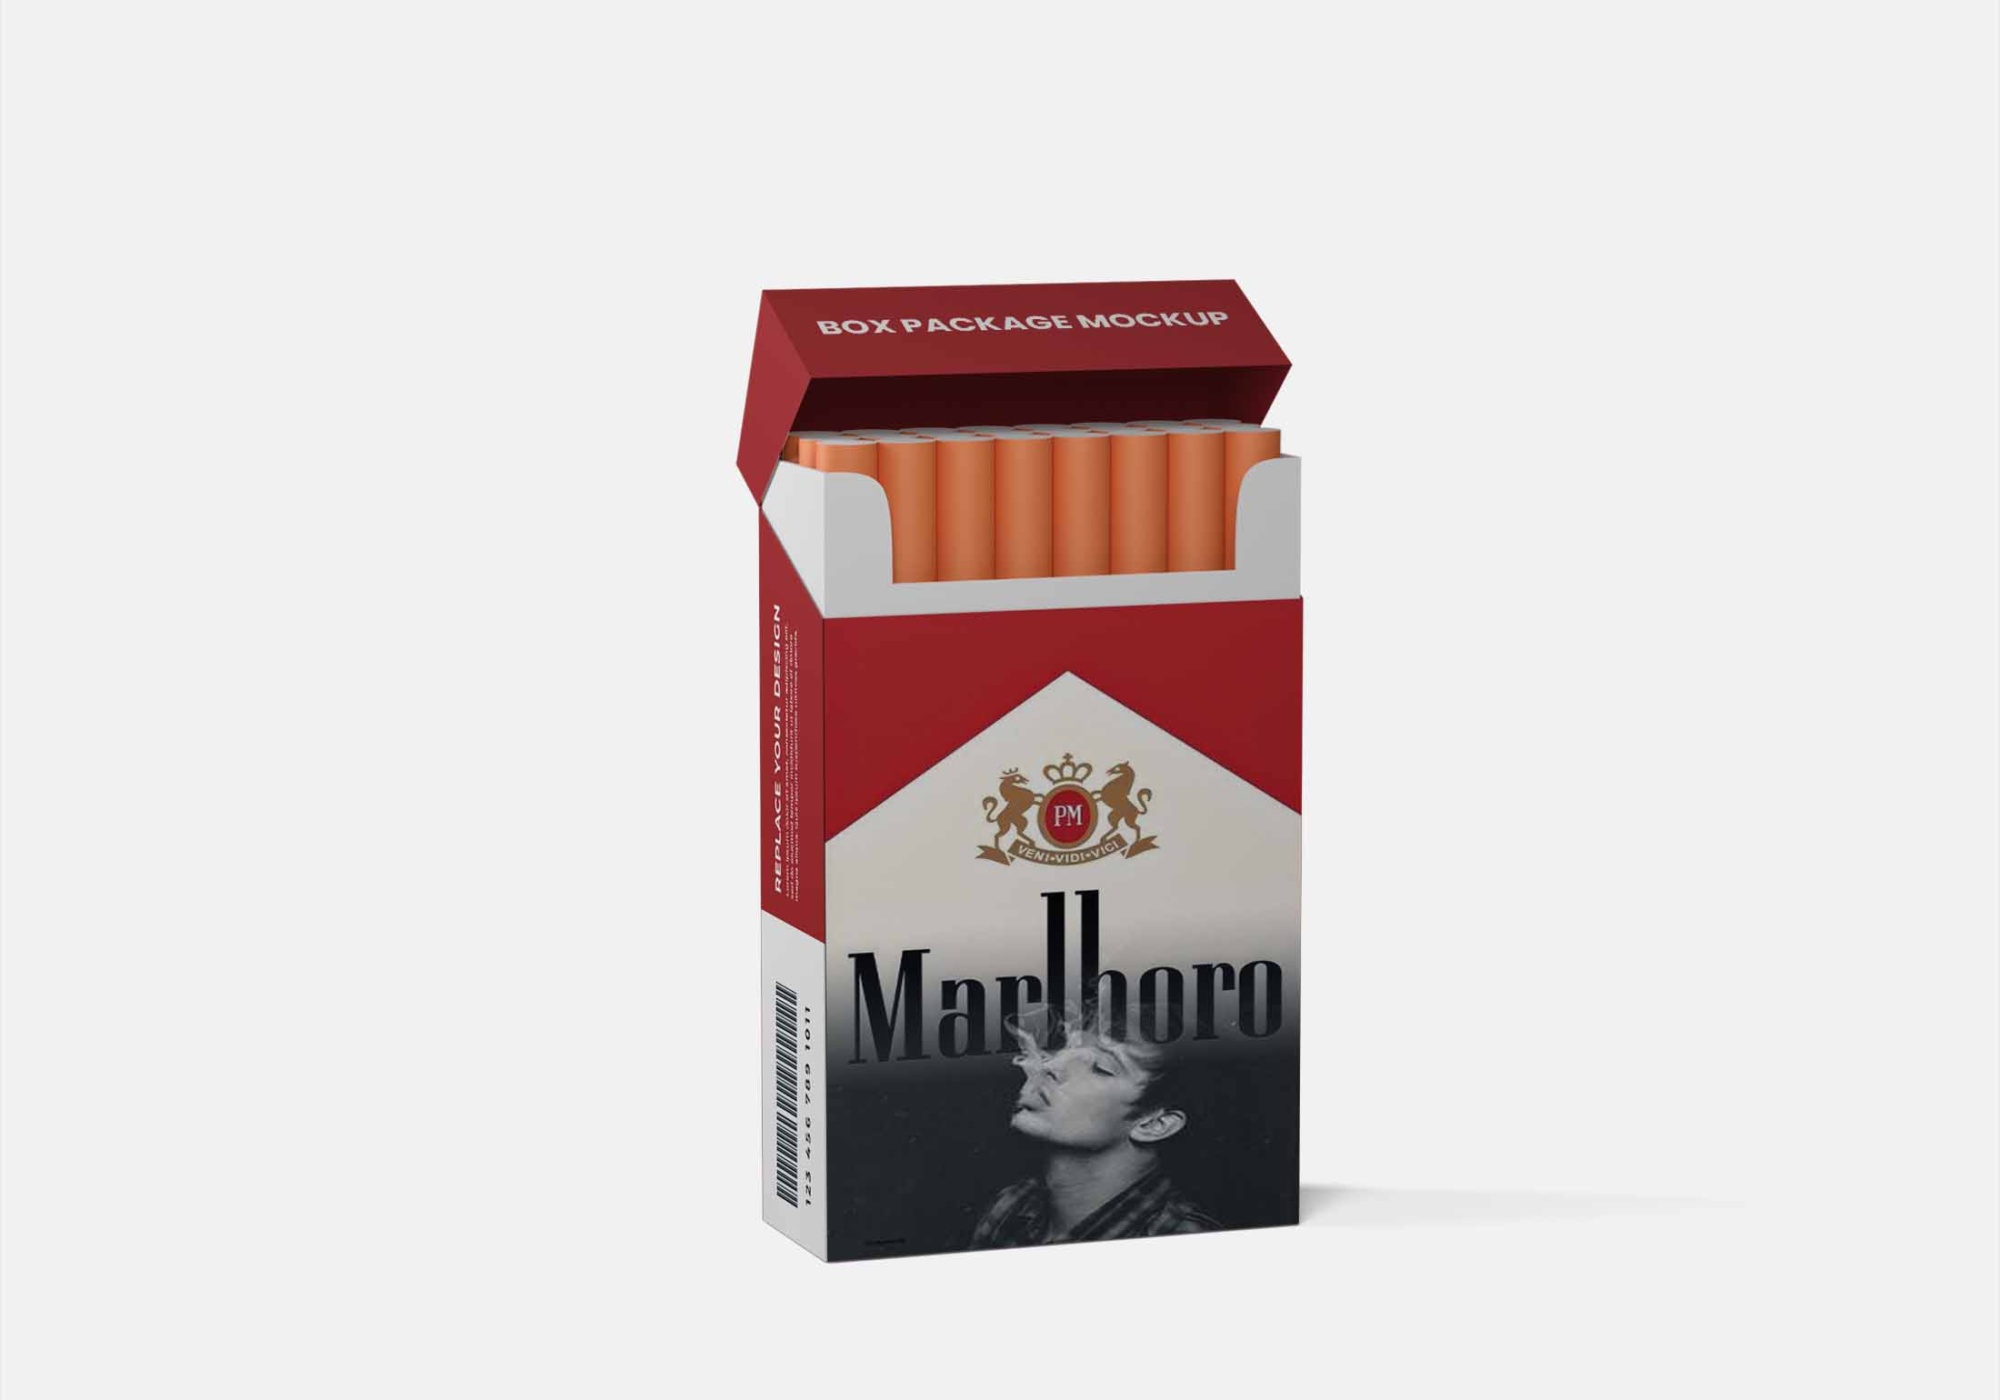 Cigarette Box Mockup PSD 4